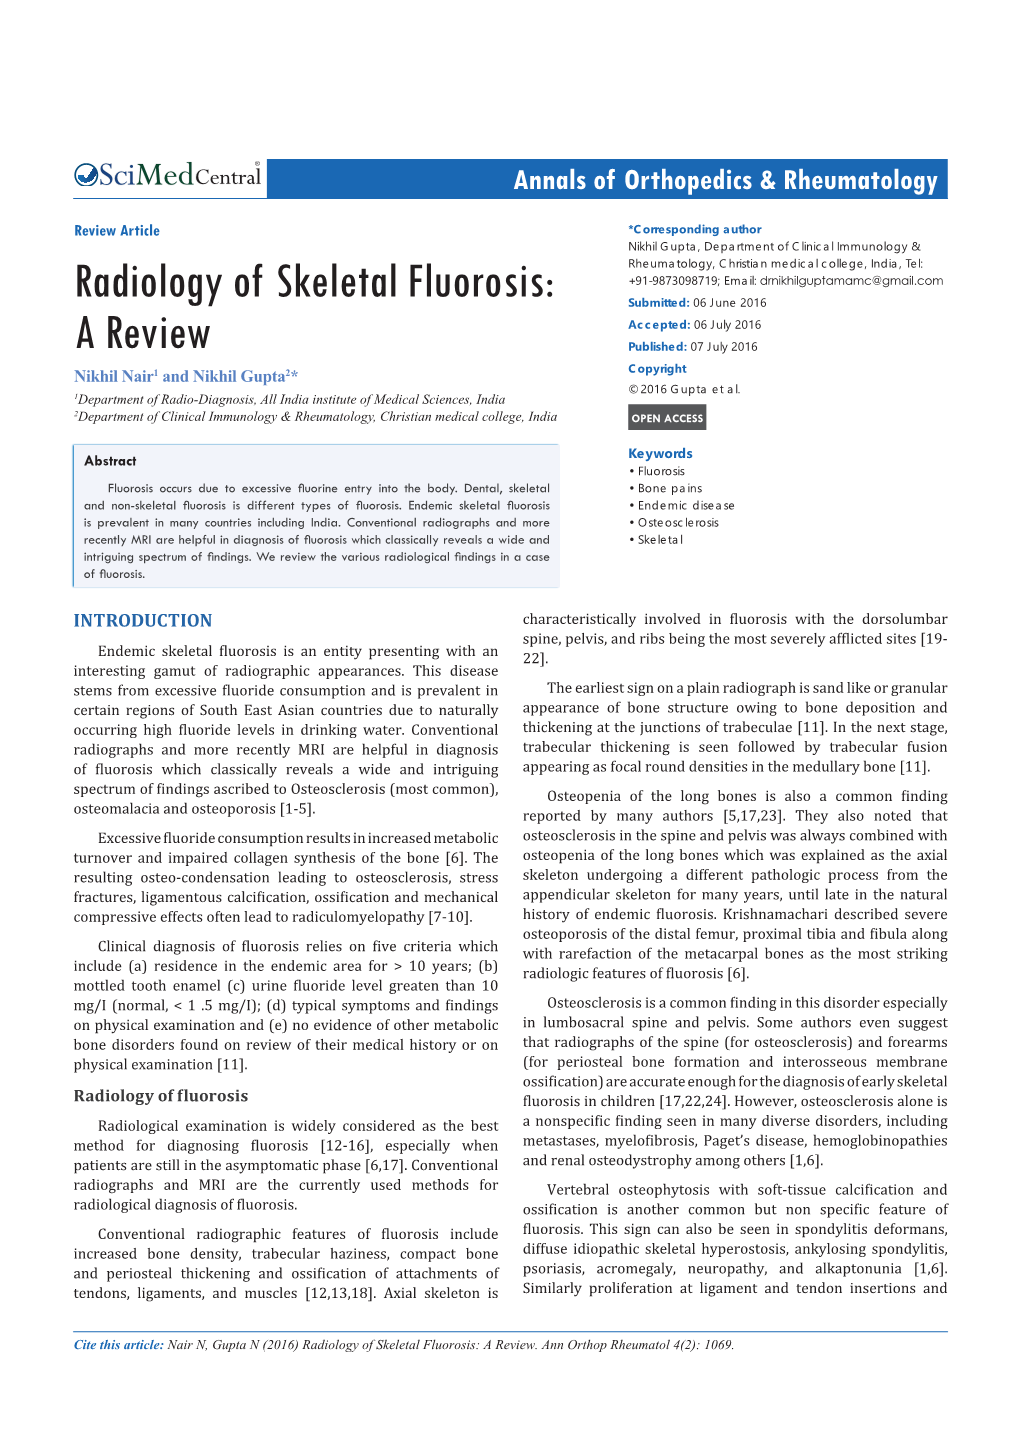 Radiology of Skeletal Fluorosis